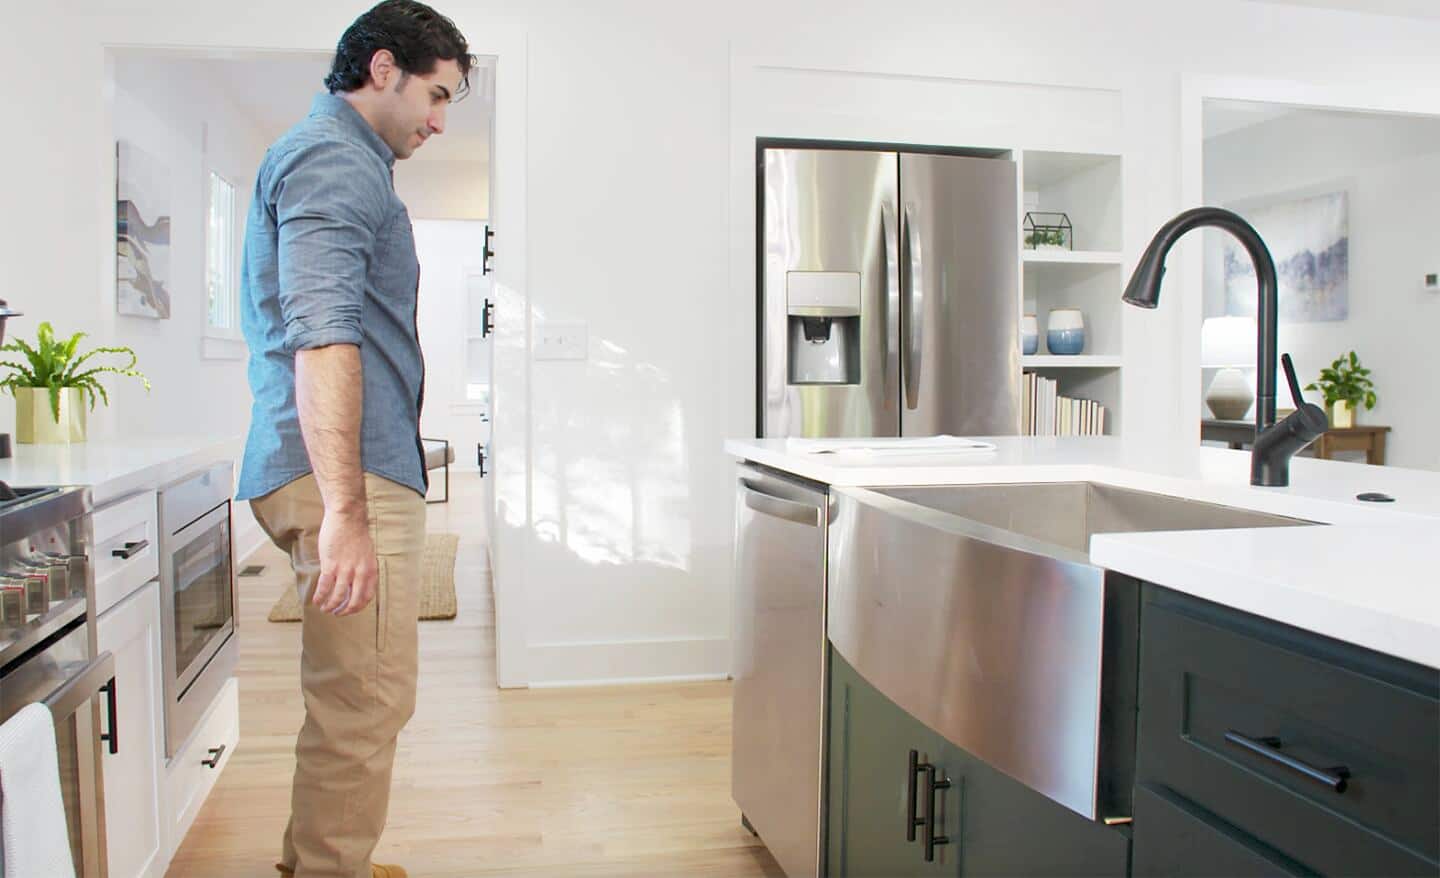 Person installs dishwasher in kitchen